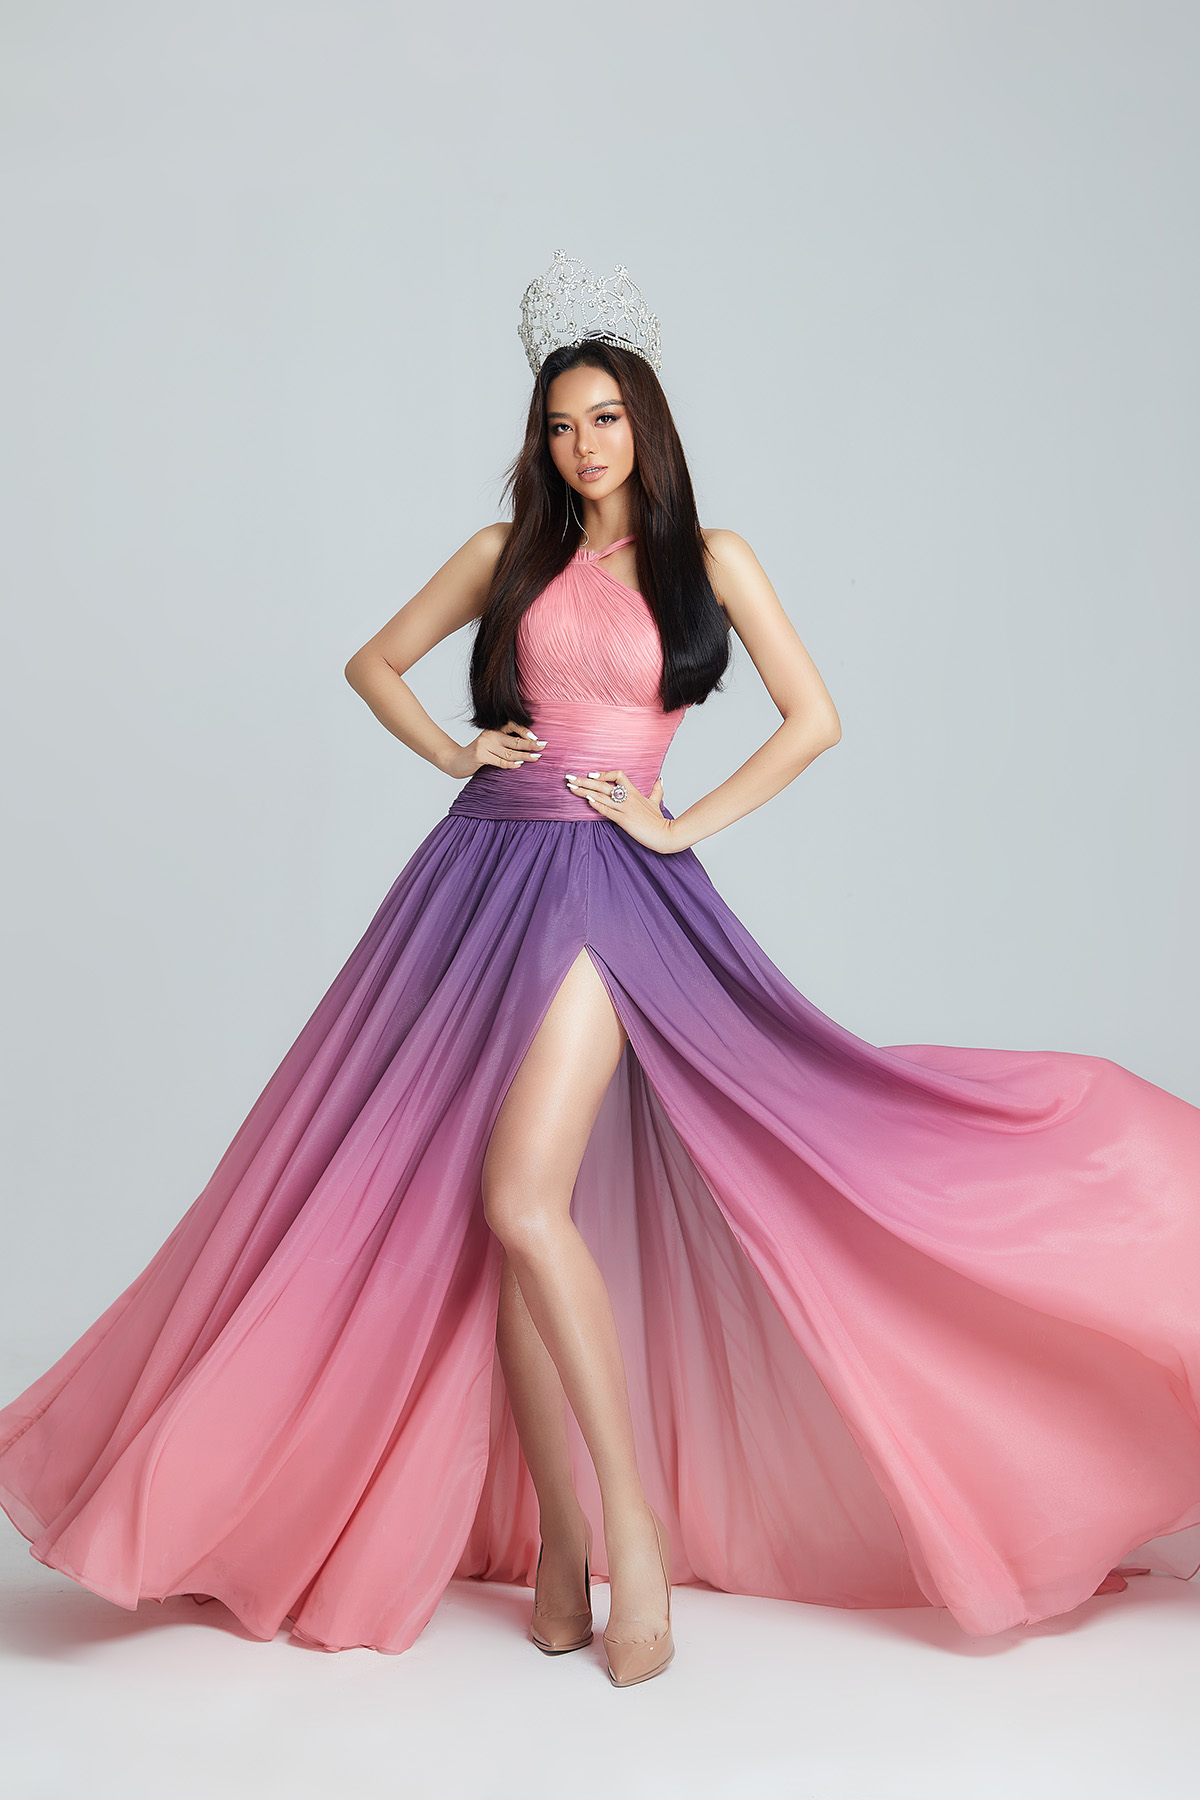 NTK Võ Thành Can0 “Bỏng mắt” với bộ ảnh sexy đầy màu sắc, đa phong cách của Hoa hậu Kiều Ngân